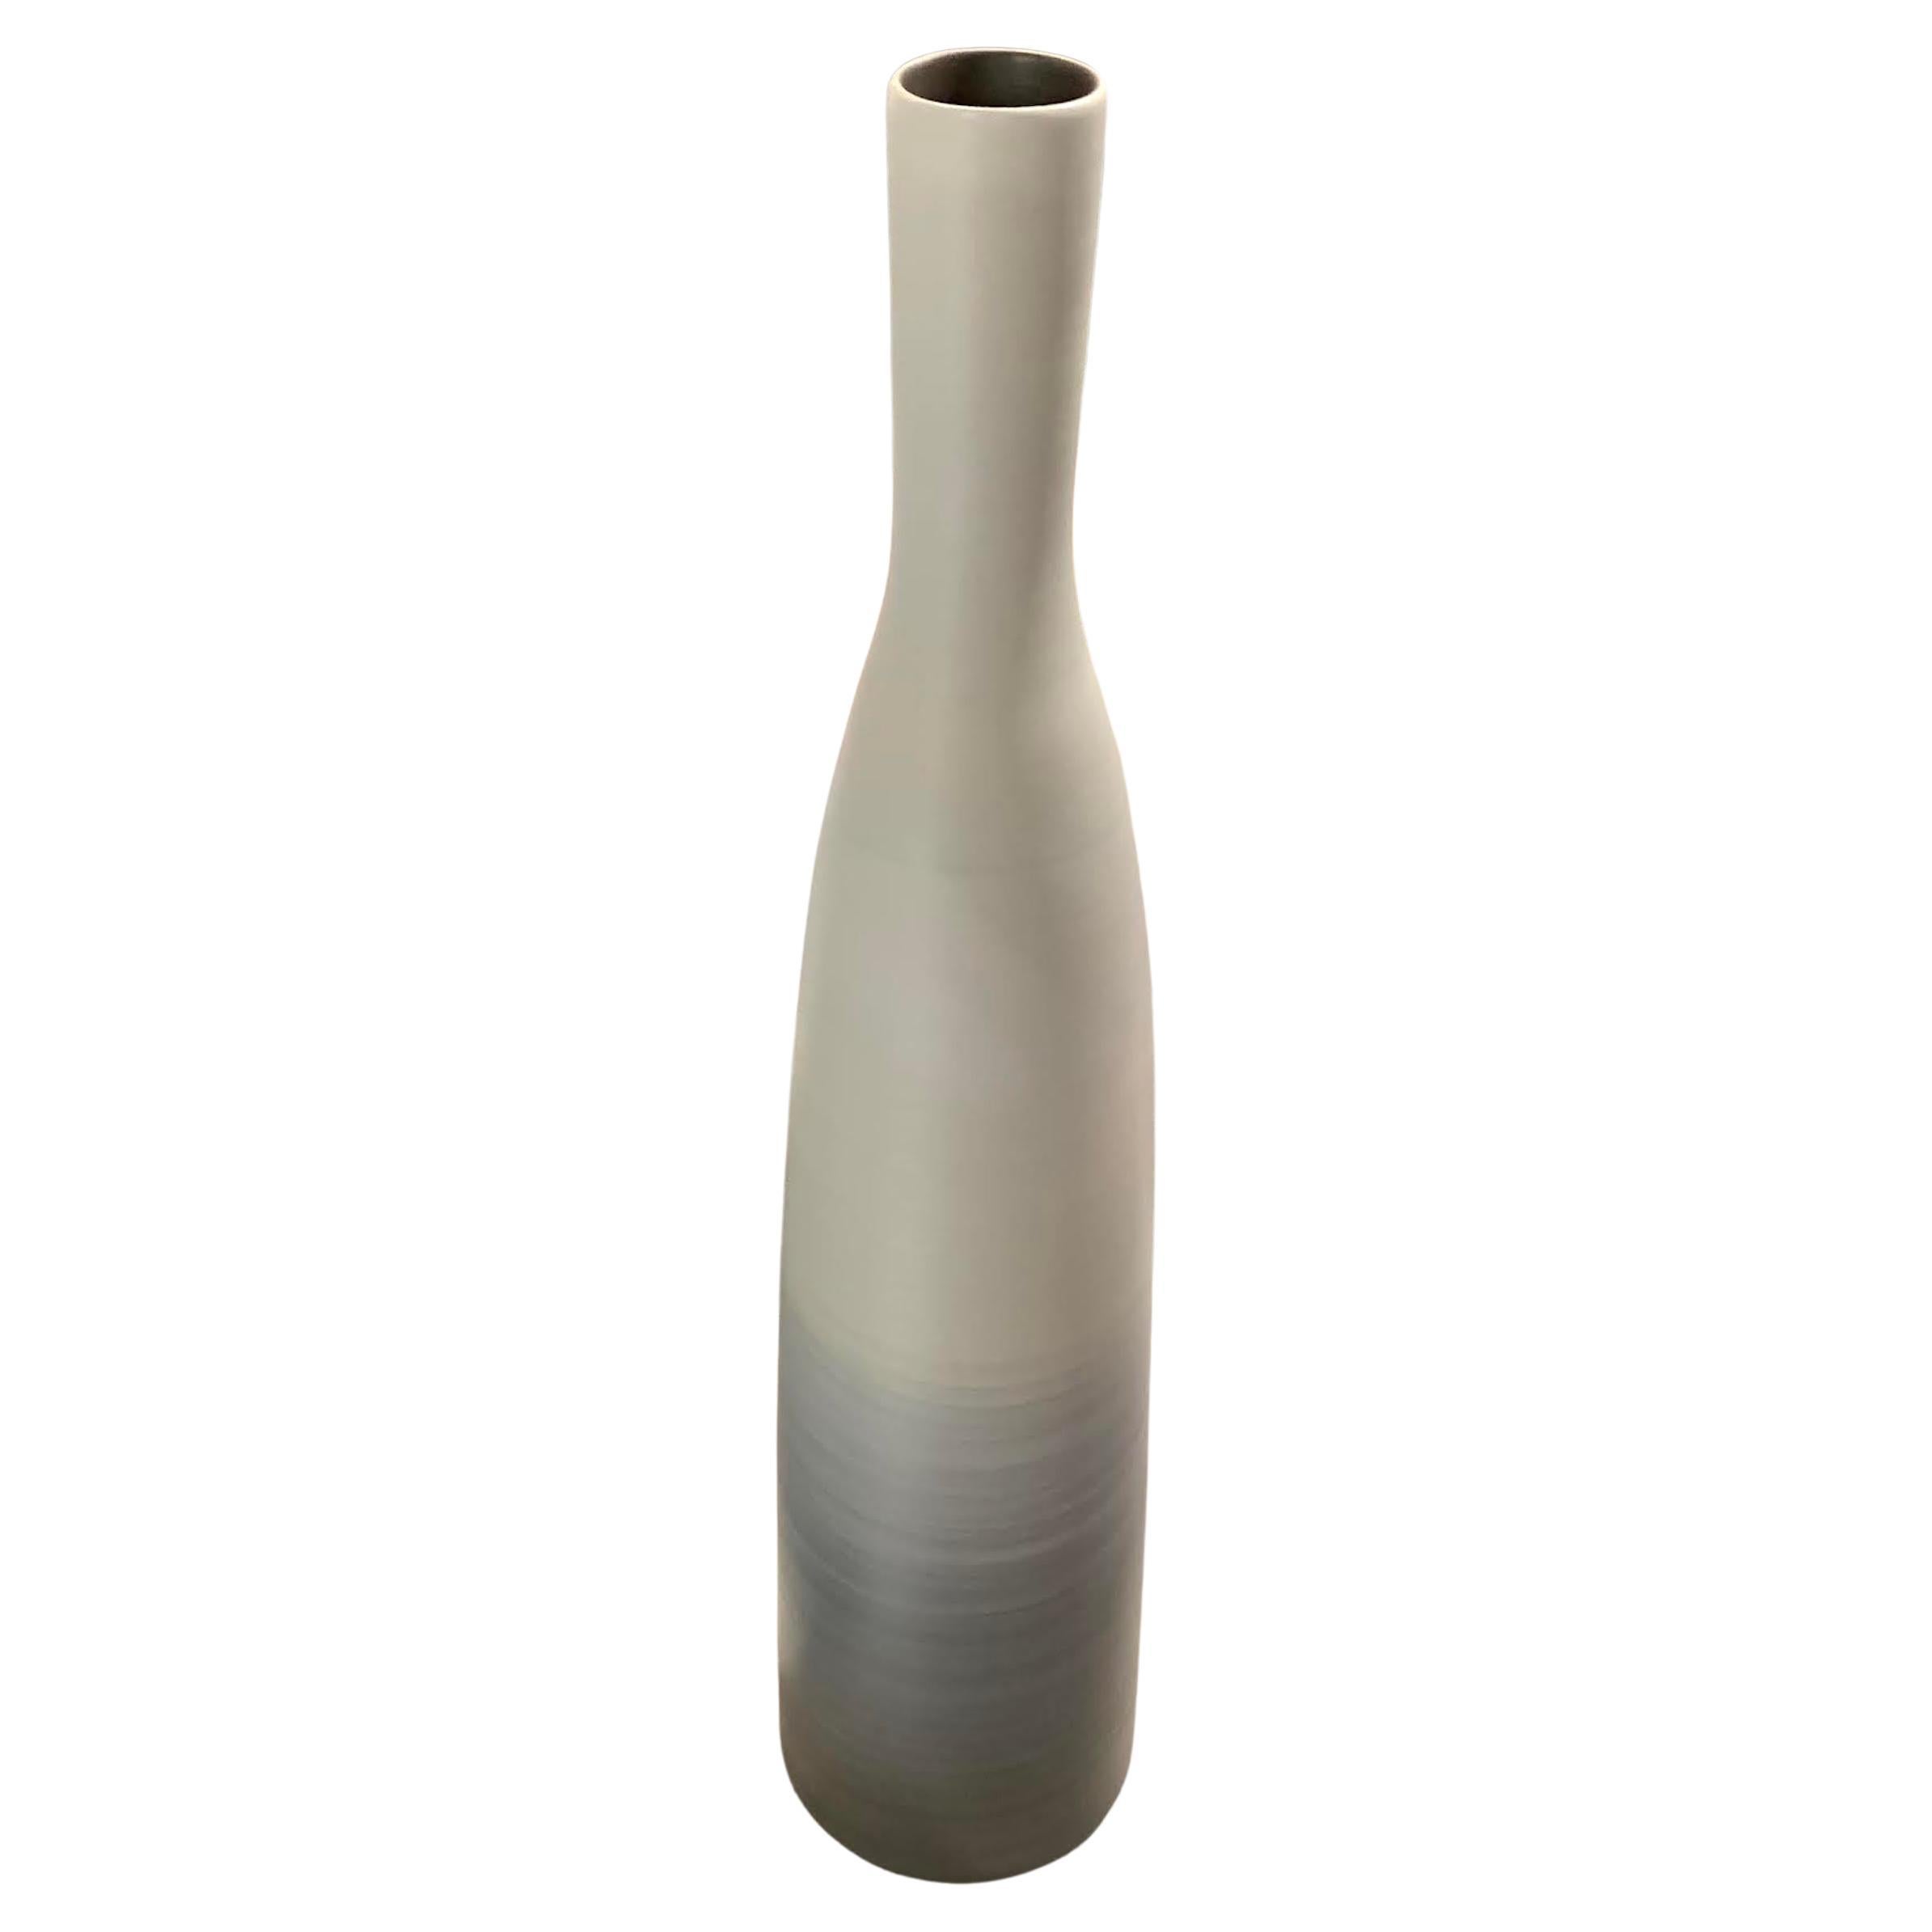 Extra Tall Ombre Glaze Thin Vase, Italy, Contemporary